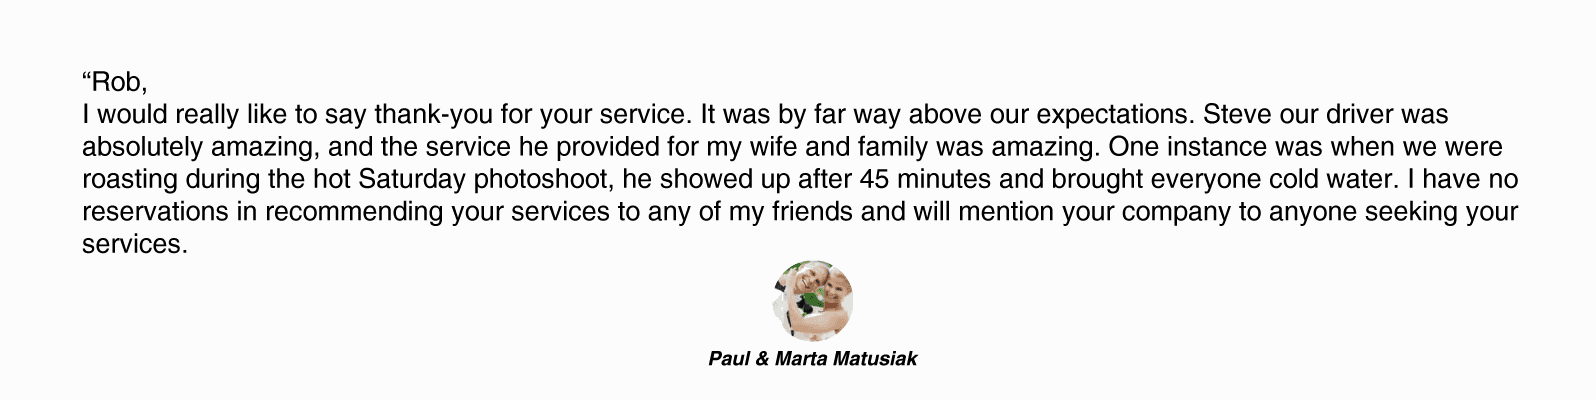 Paul & Marta